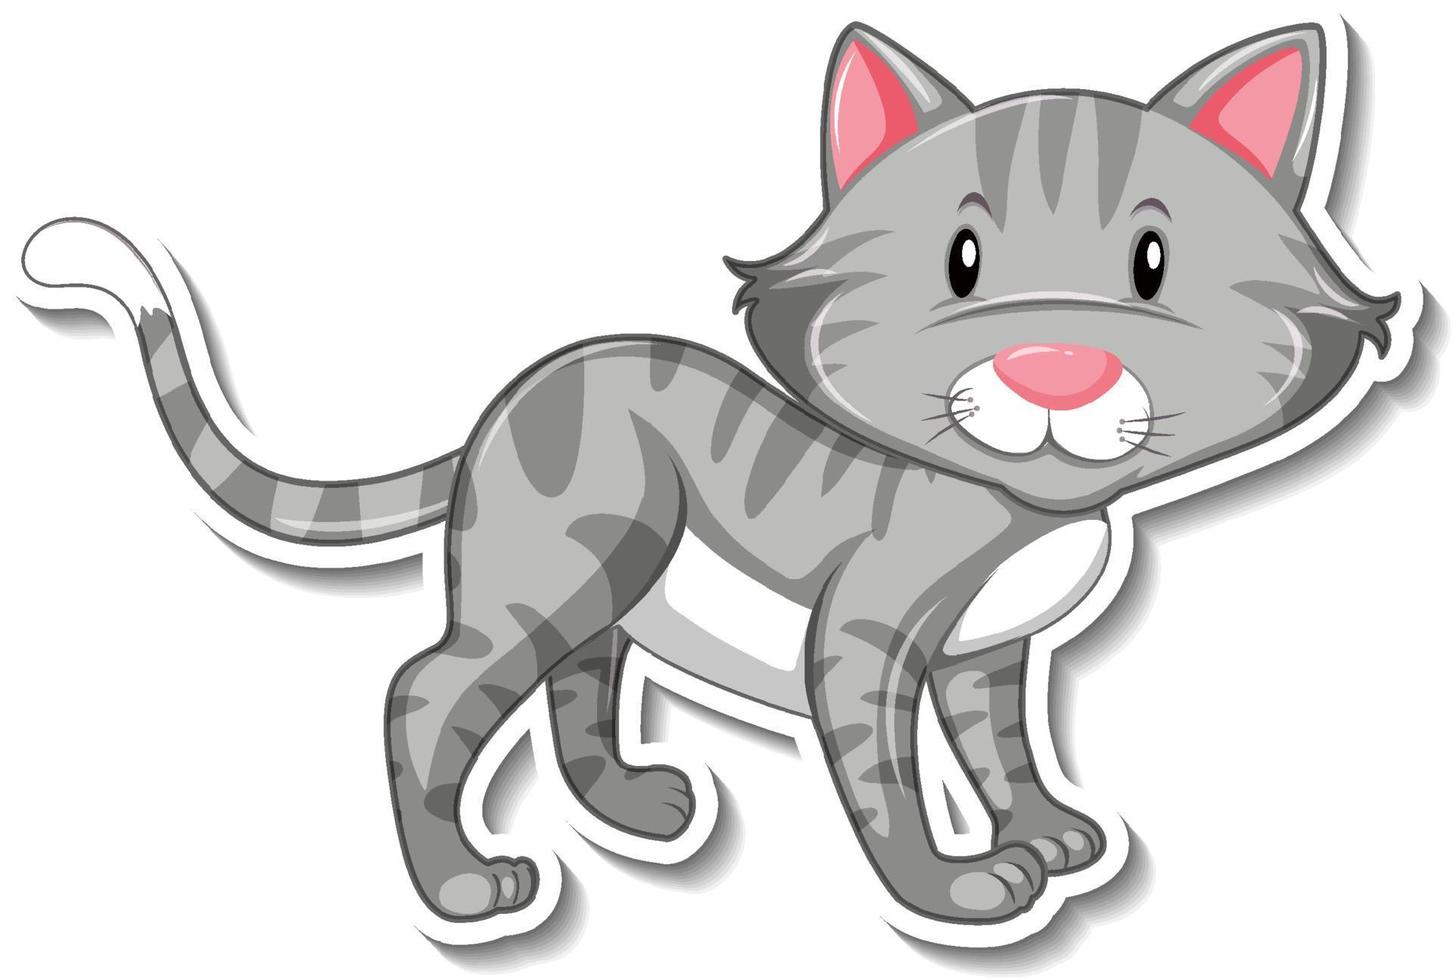 um modelo de adesivo de um personagem de desenho animado de gato vetor